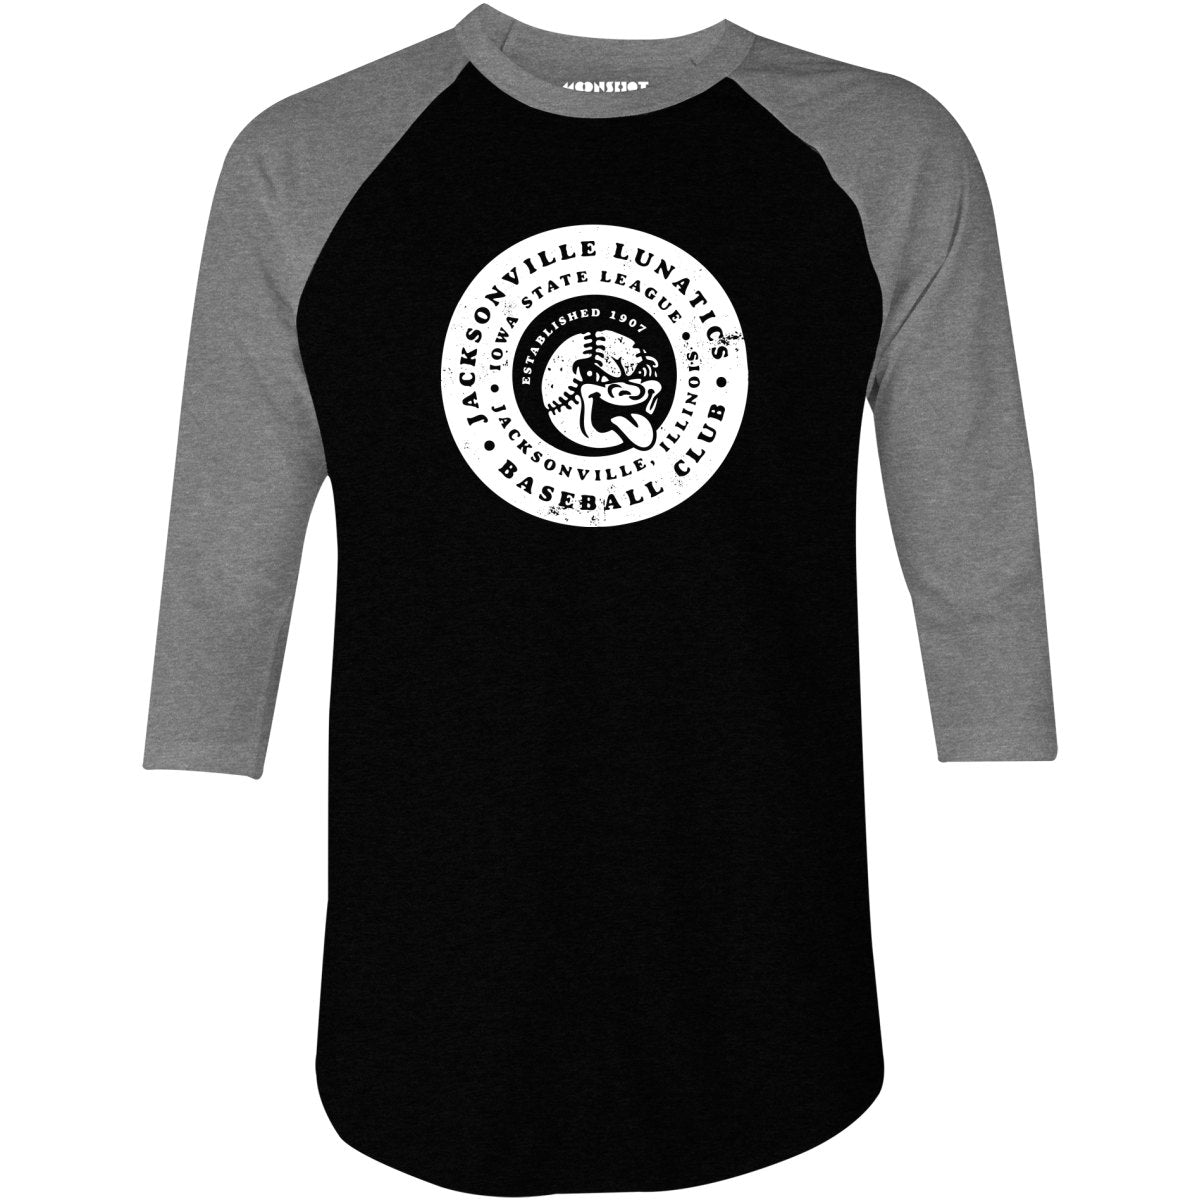 Jacksonville Lunatics - Illinois - Vintage Defunct Baseball Teams - 3/4 Sleeve Raglan T-Shirt